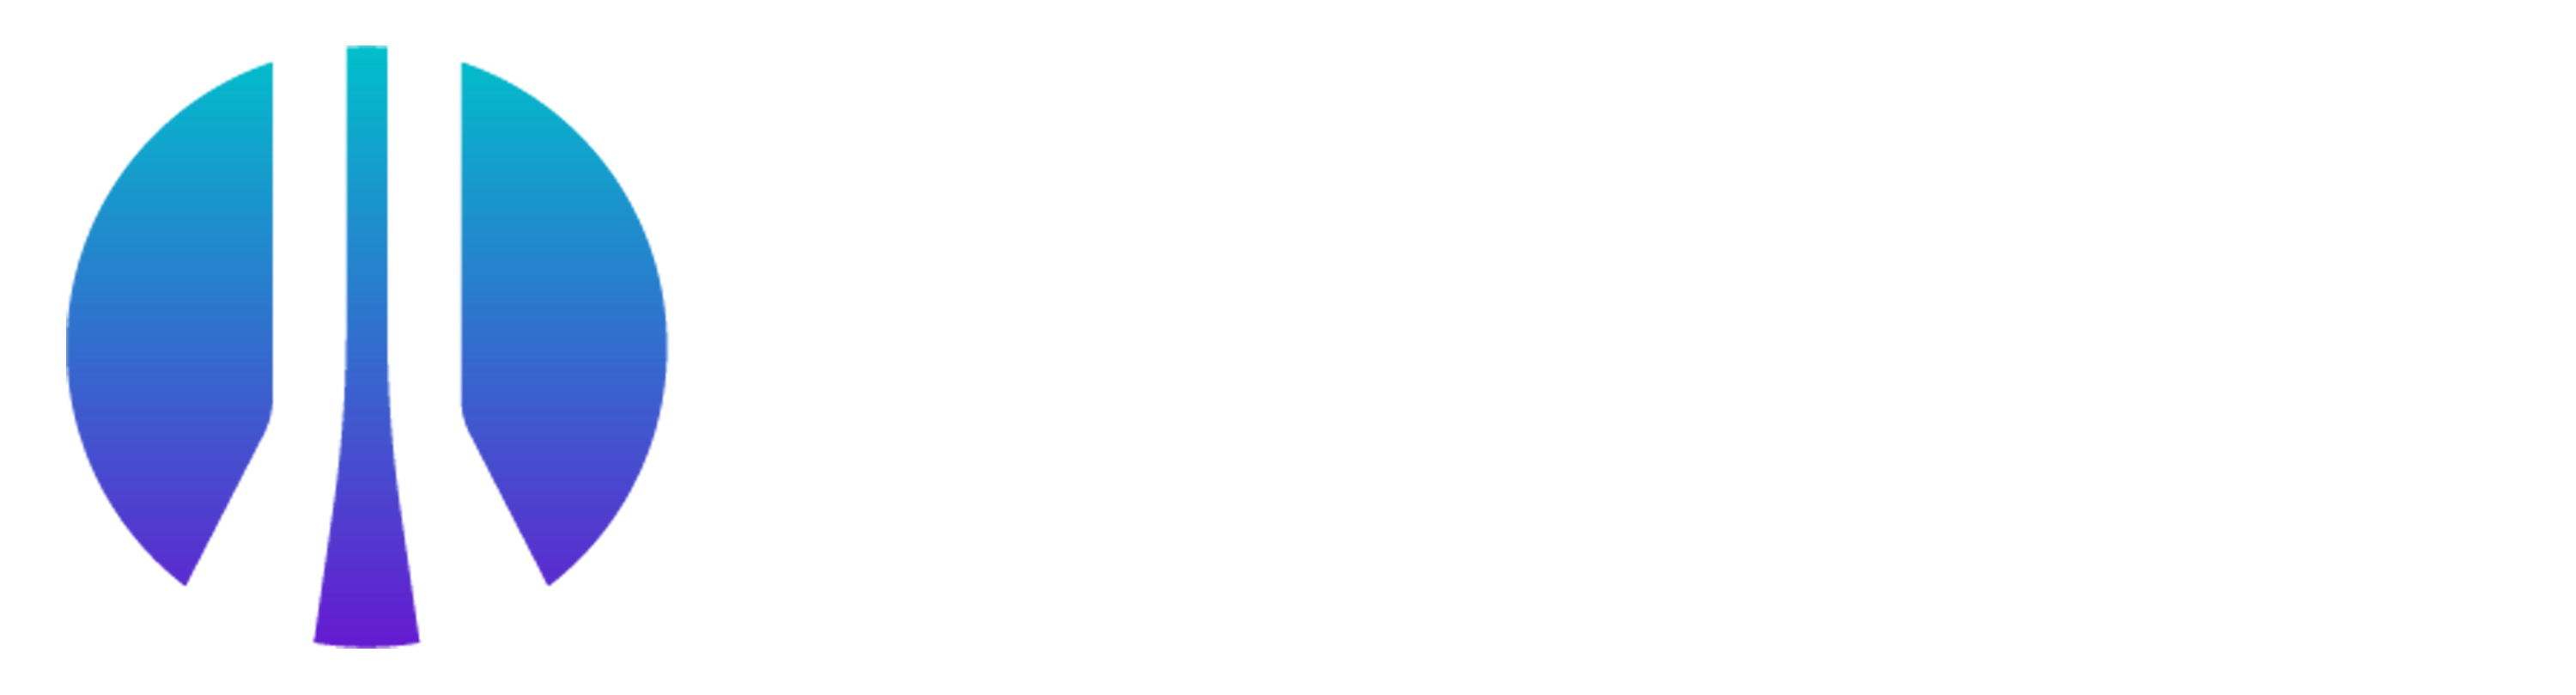 oscp logo